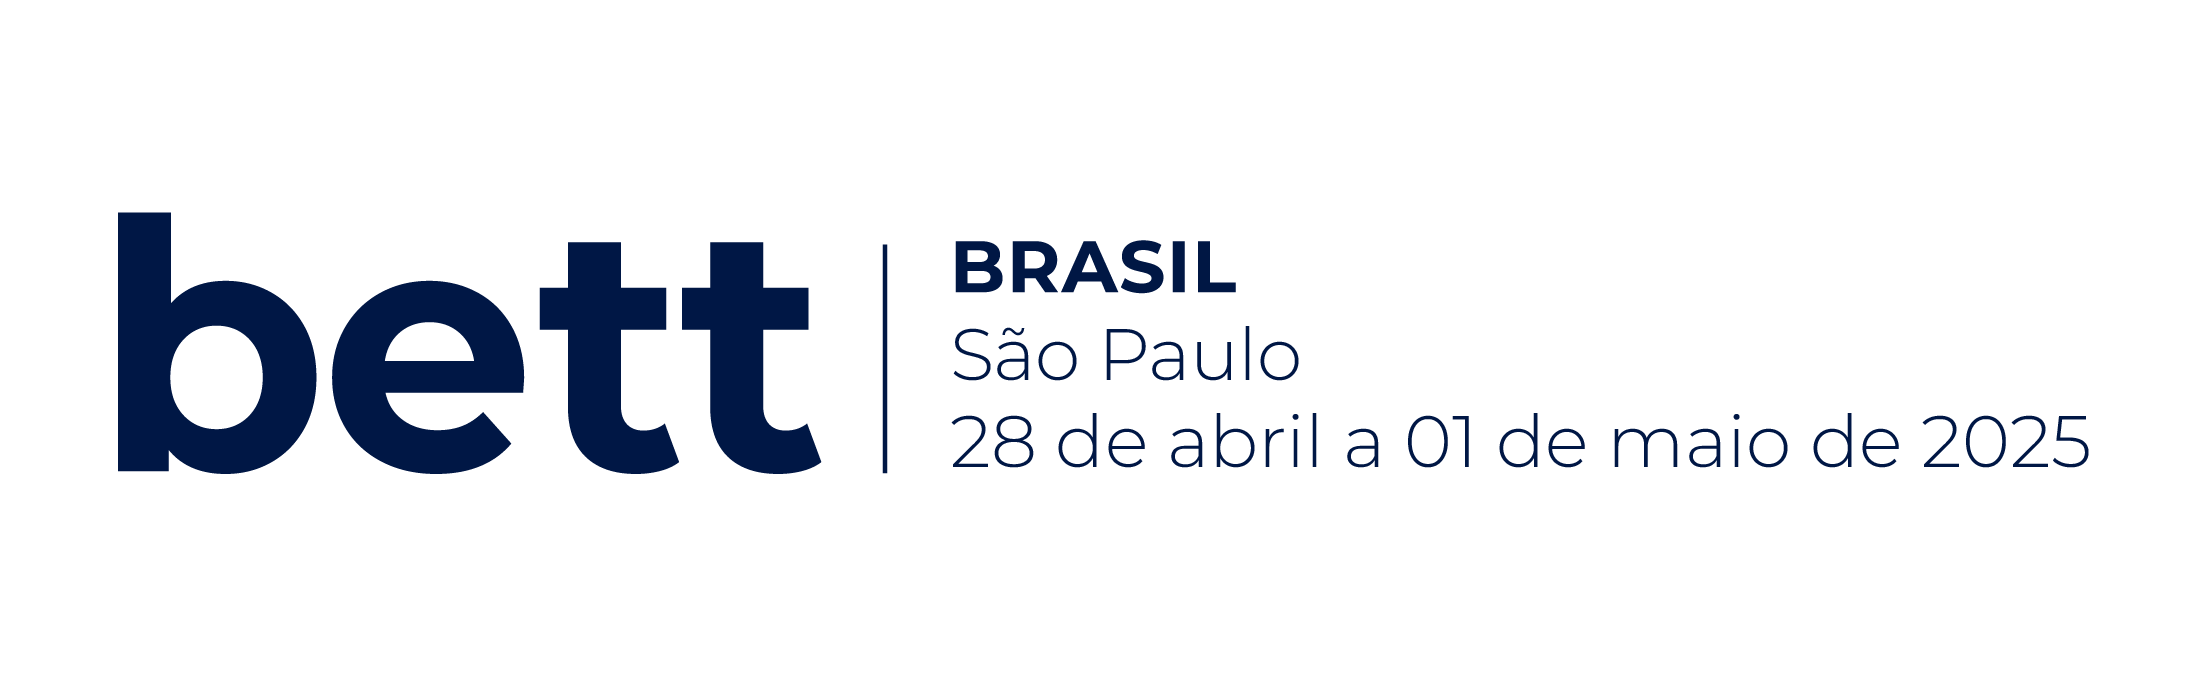 bett_brasil